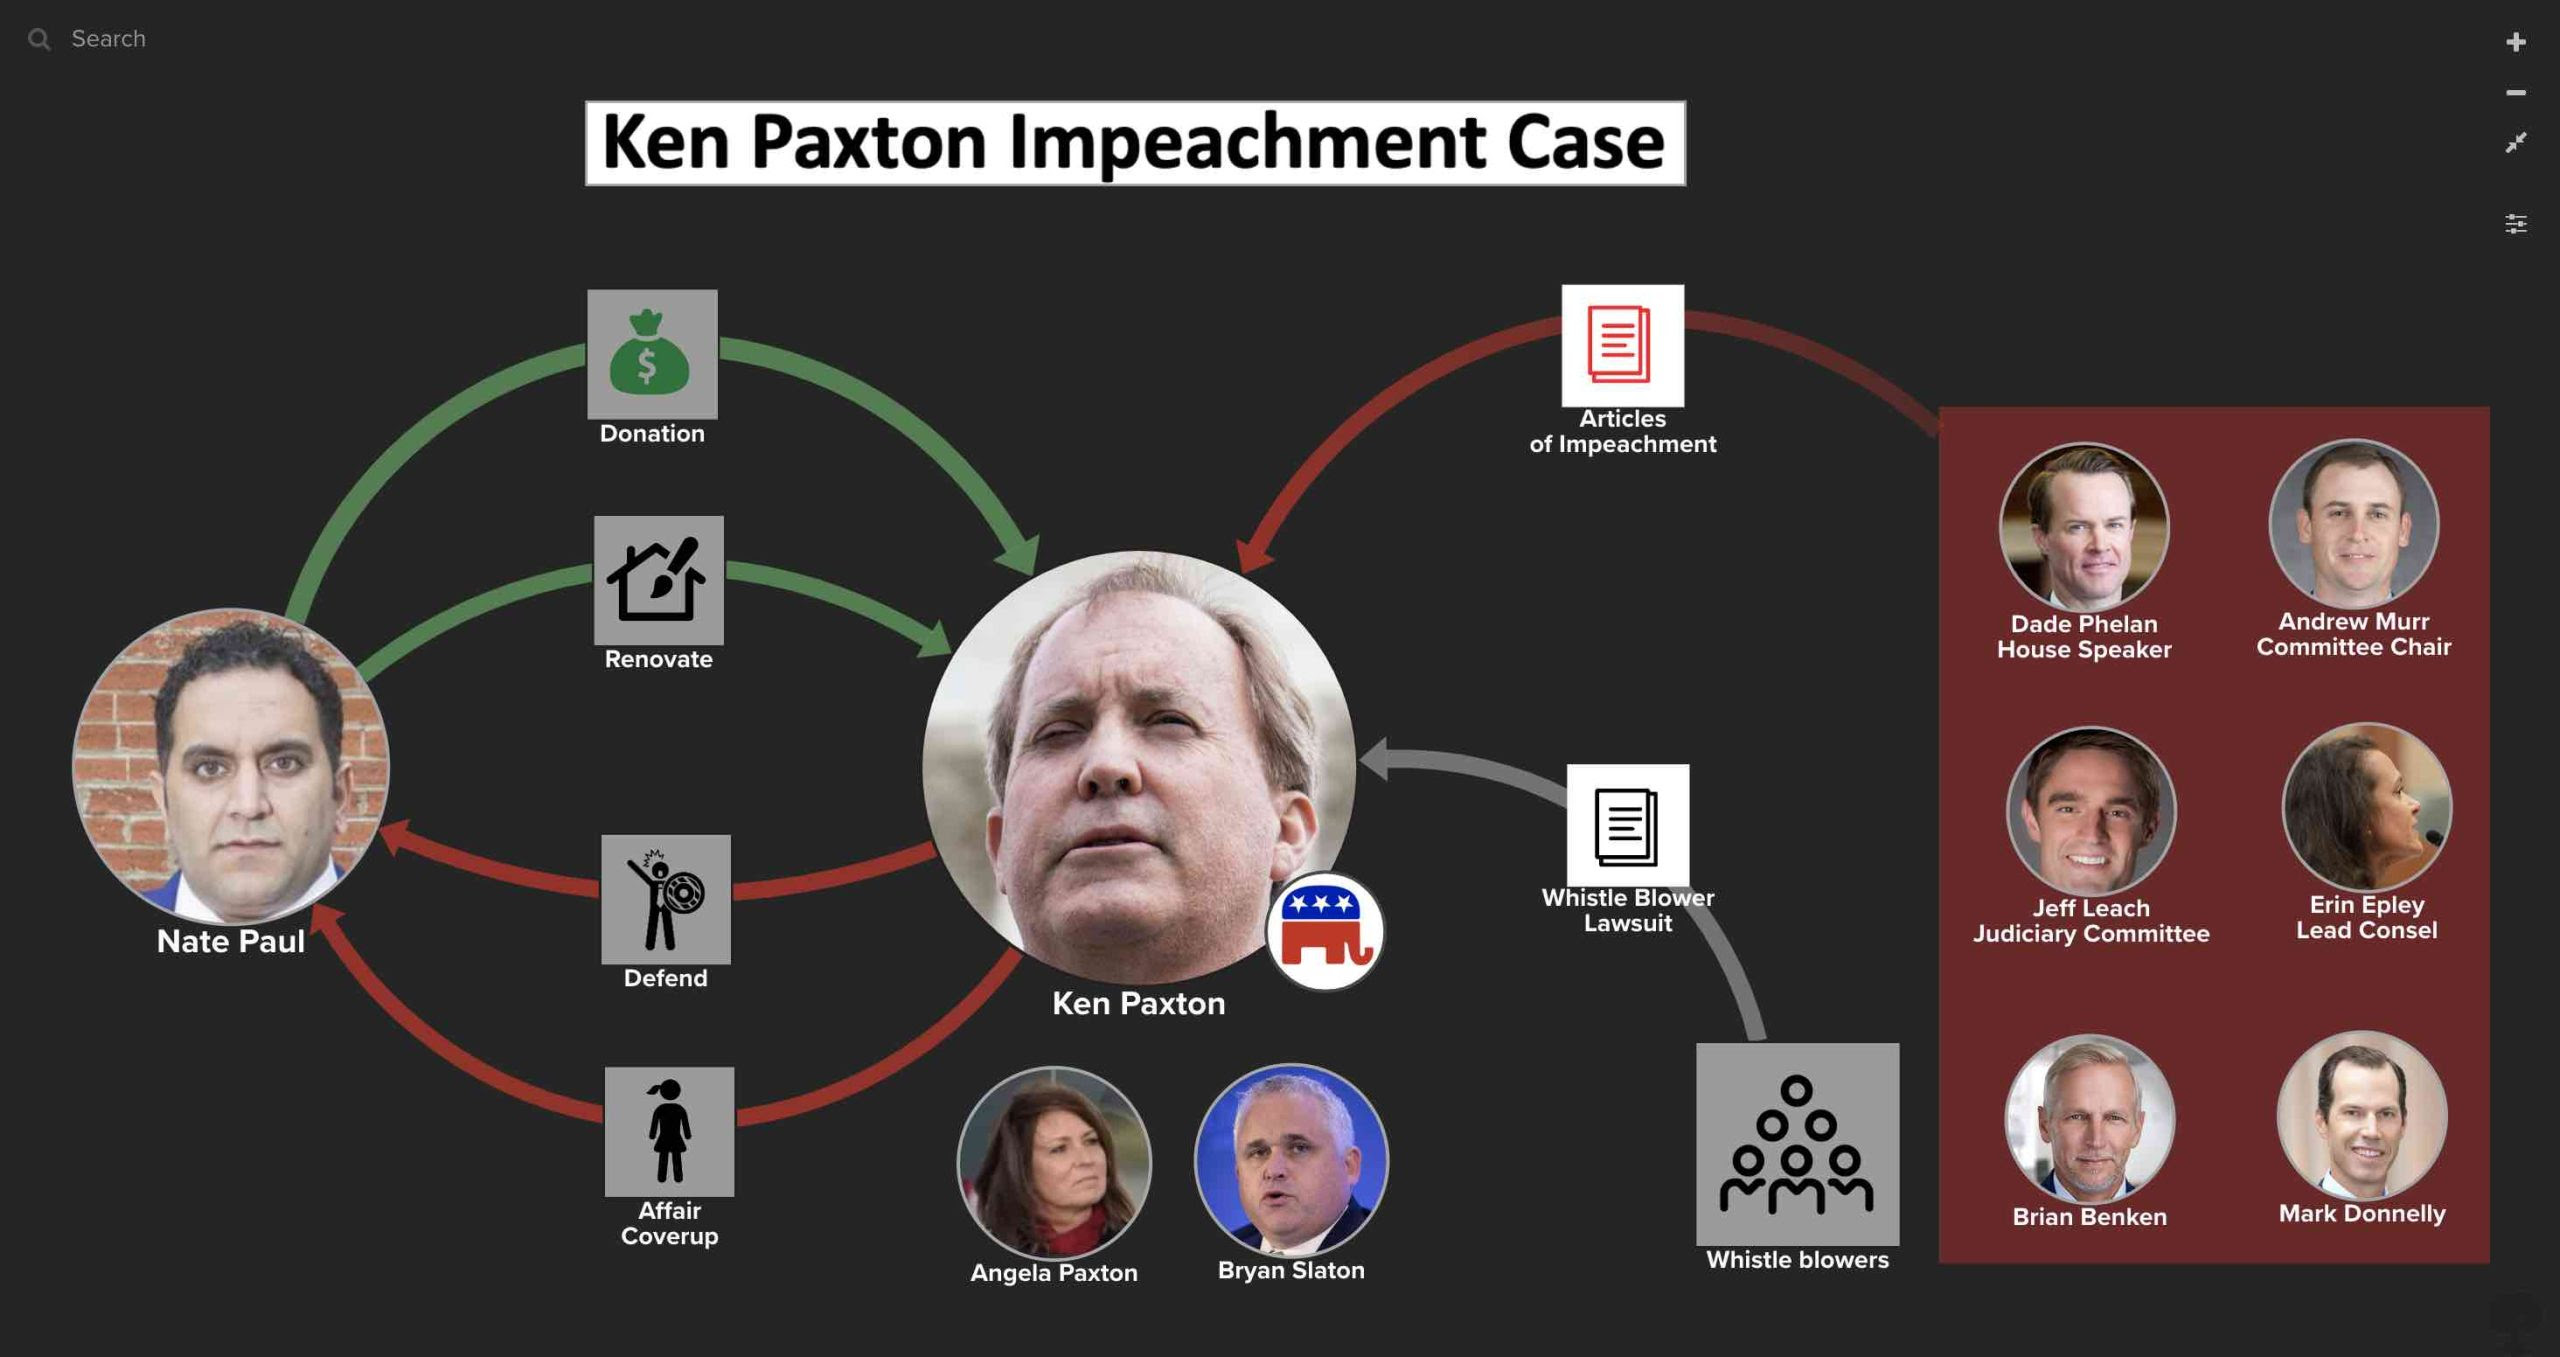 Ken Paxton impeachment case